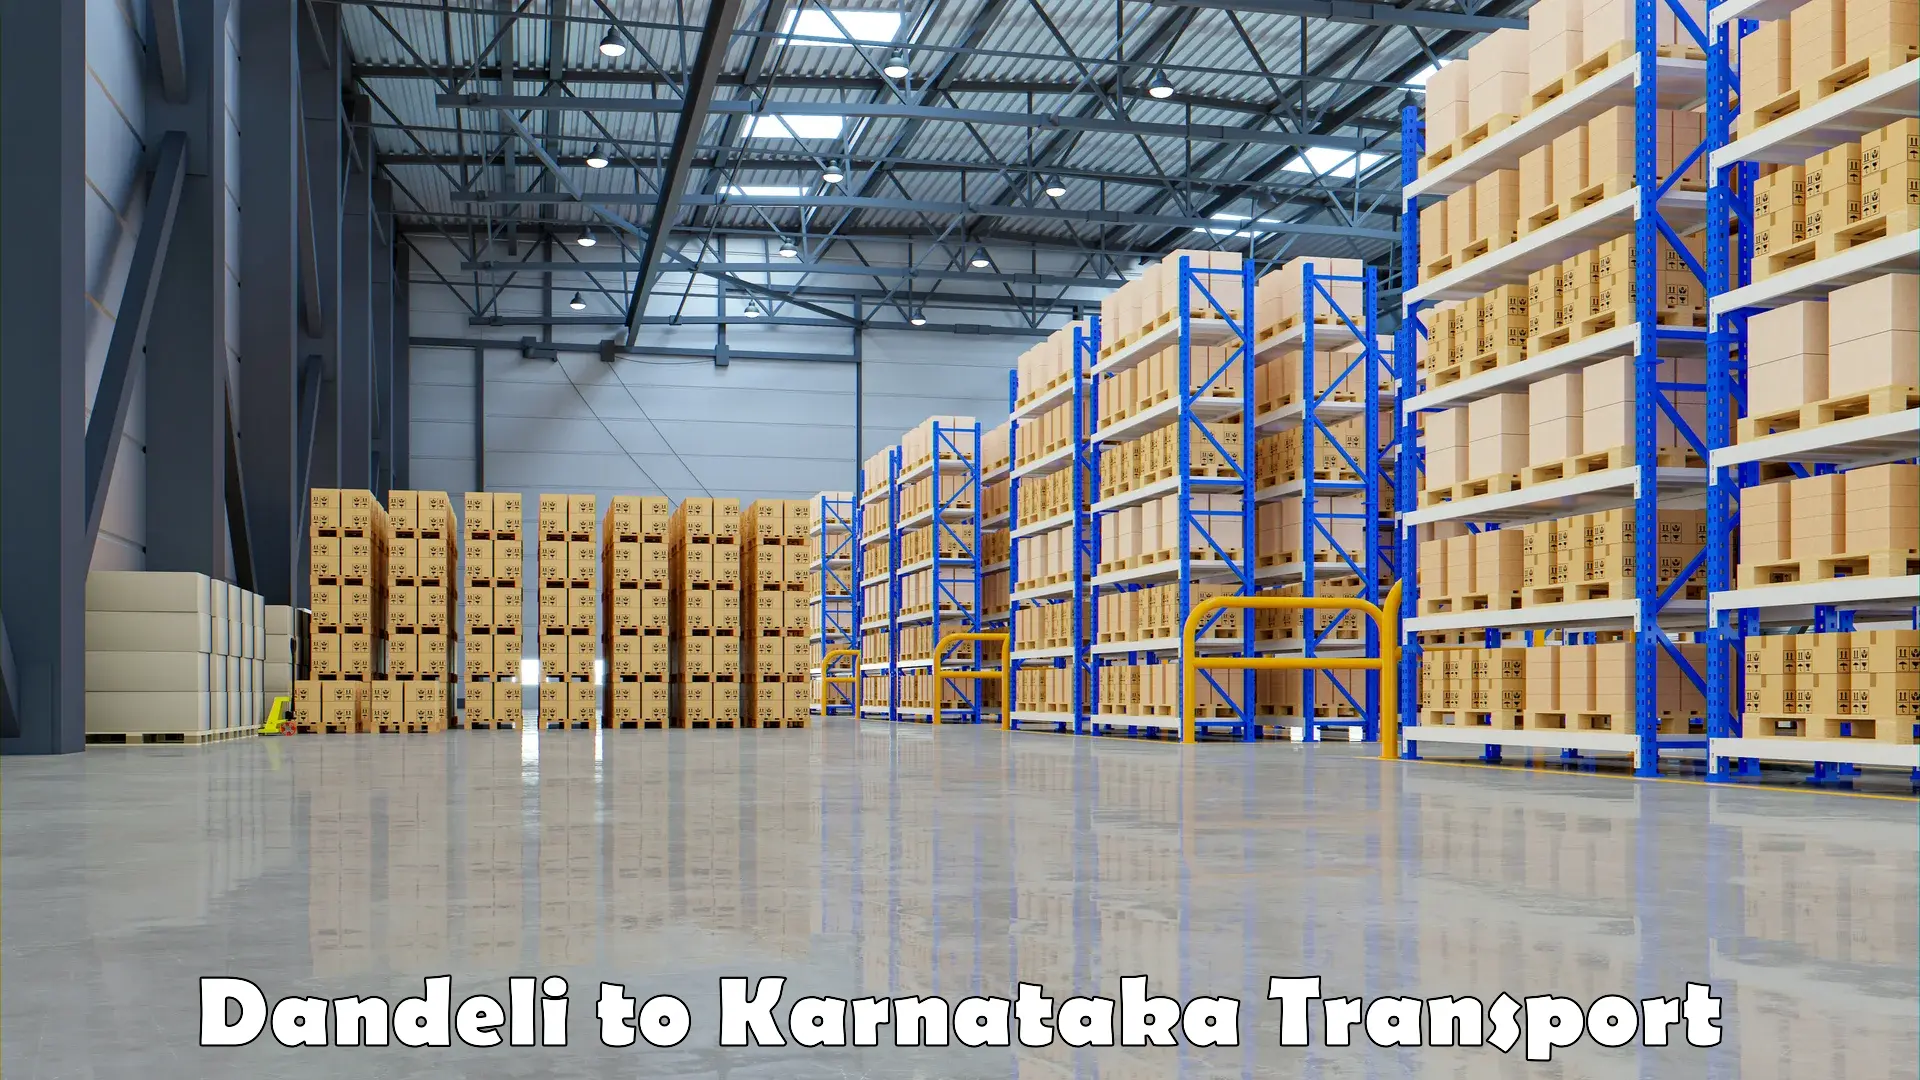 Truck transport companies in India Dandeli to Dandeli